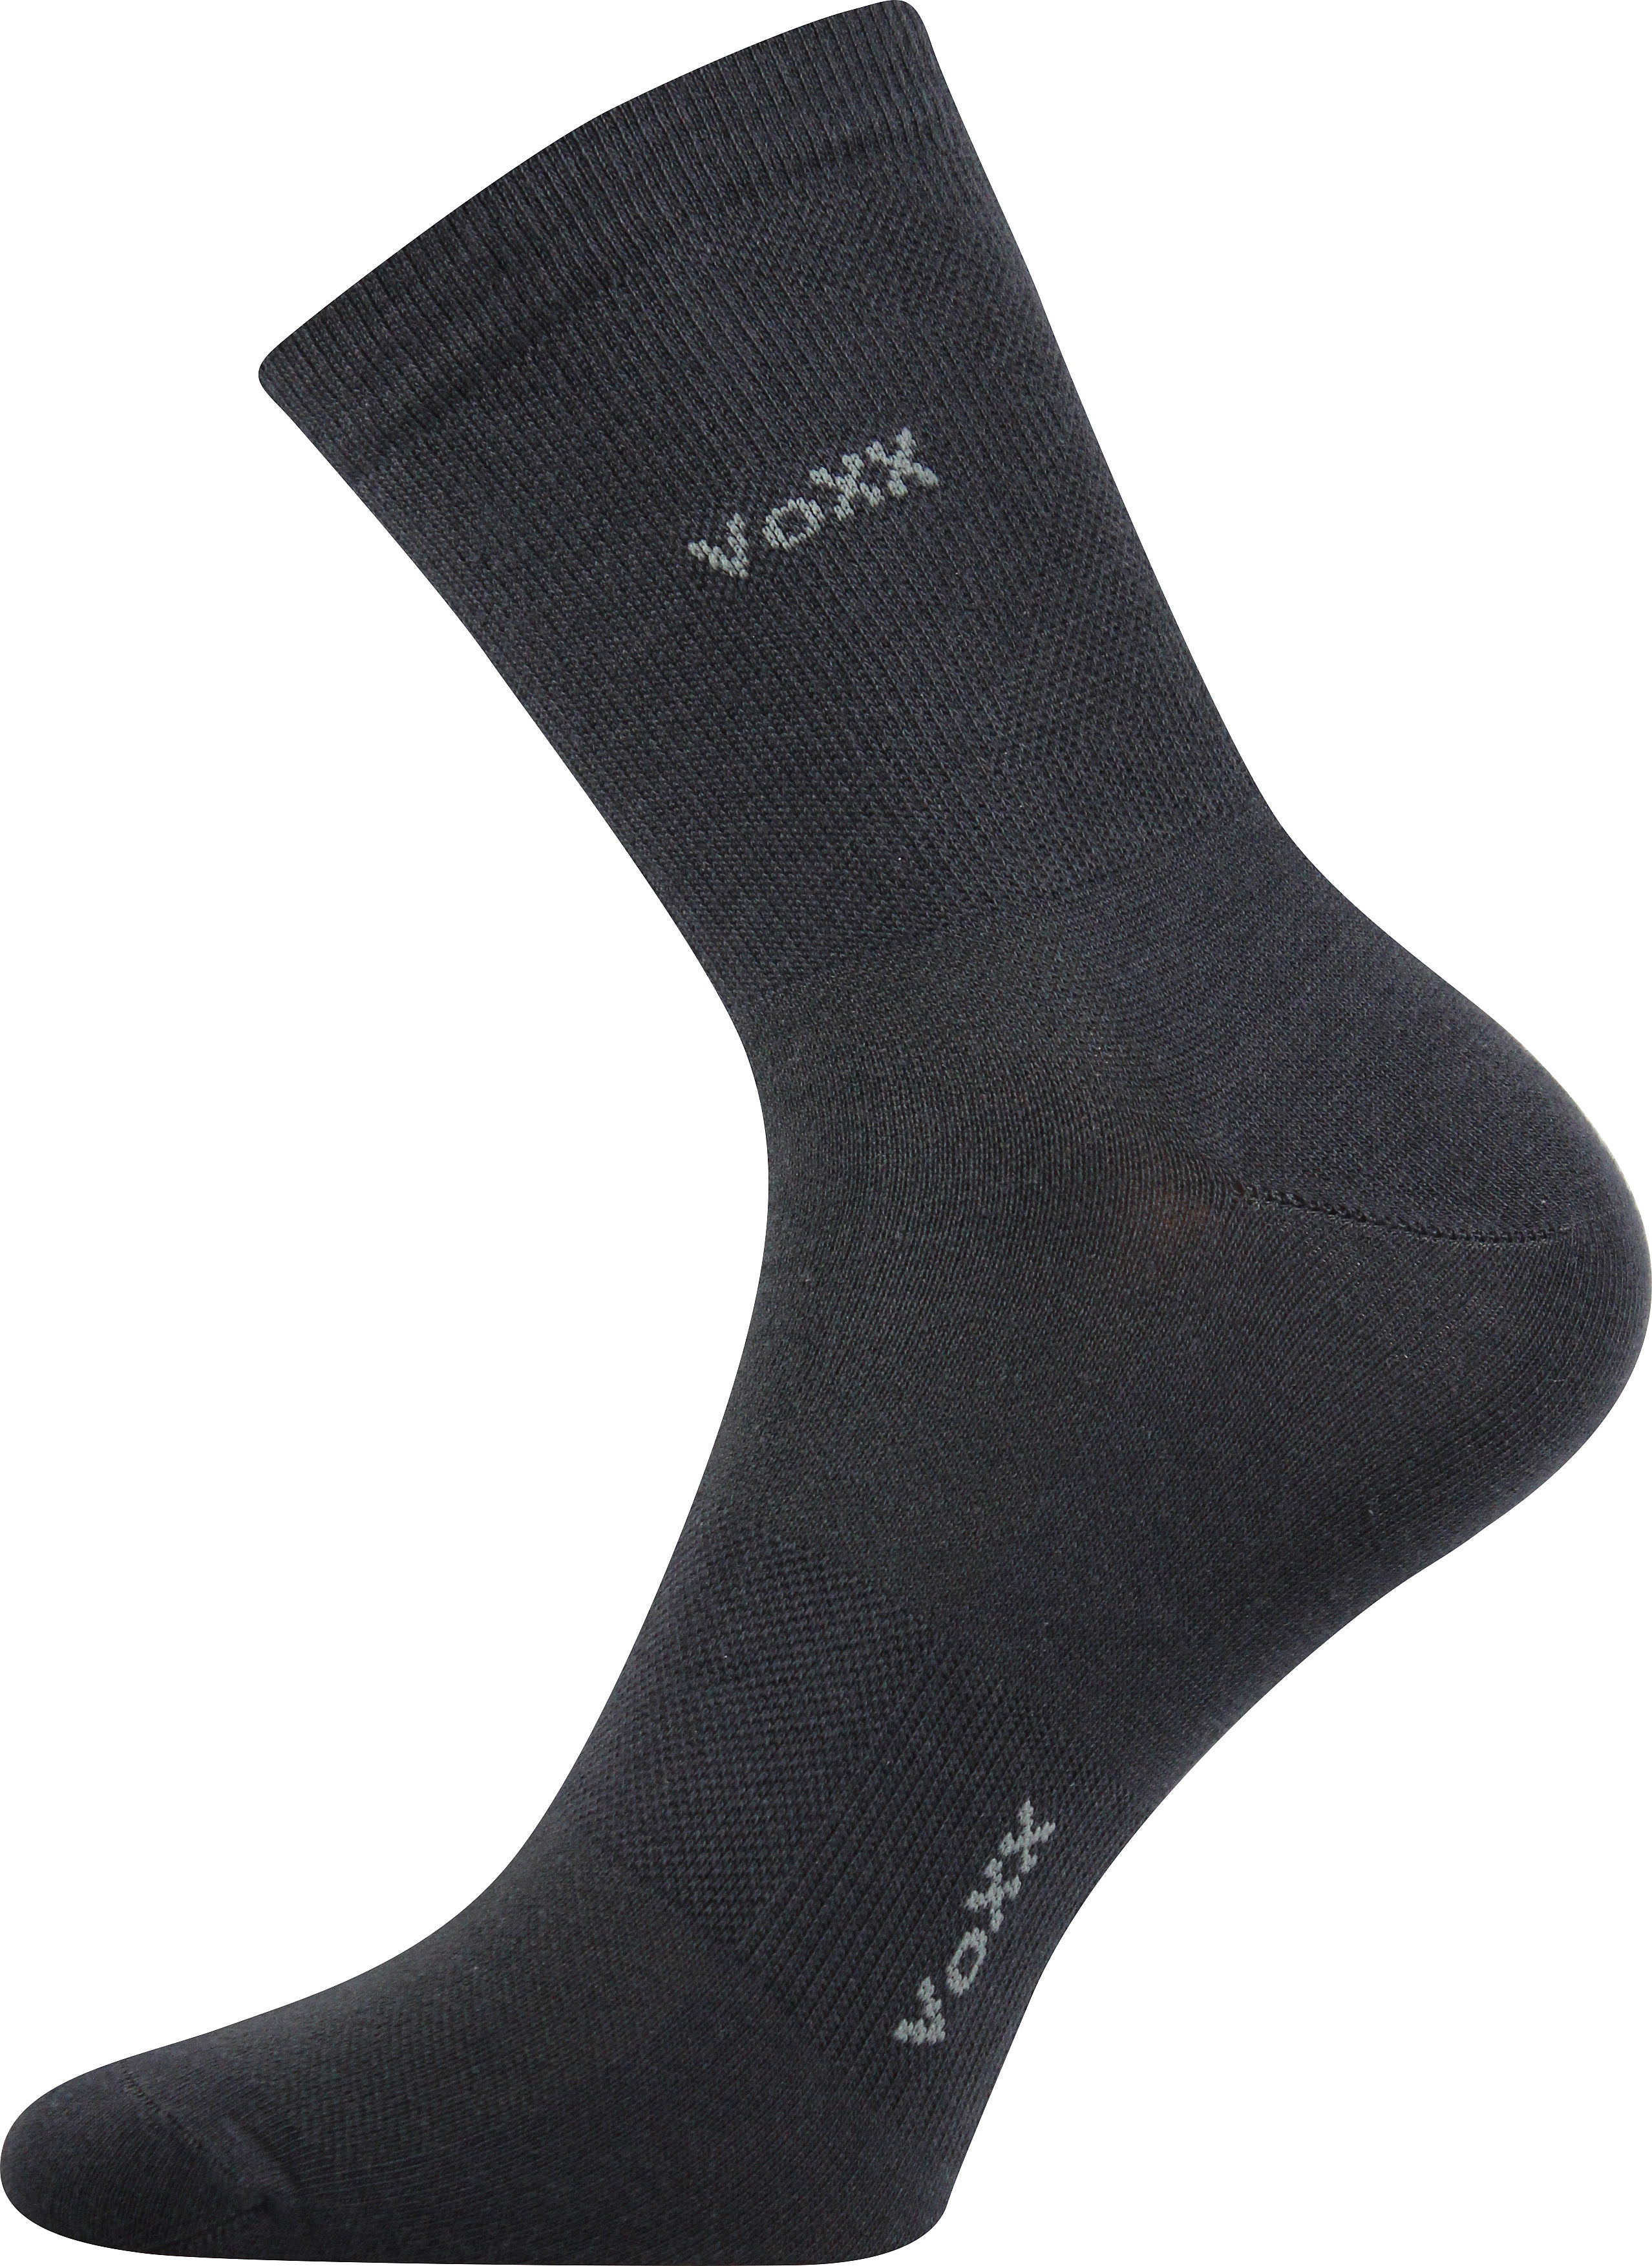 Ponožky sportovní Voxx Horizon - tmavě šedé, 35-38